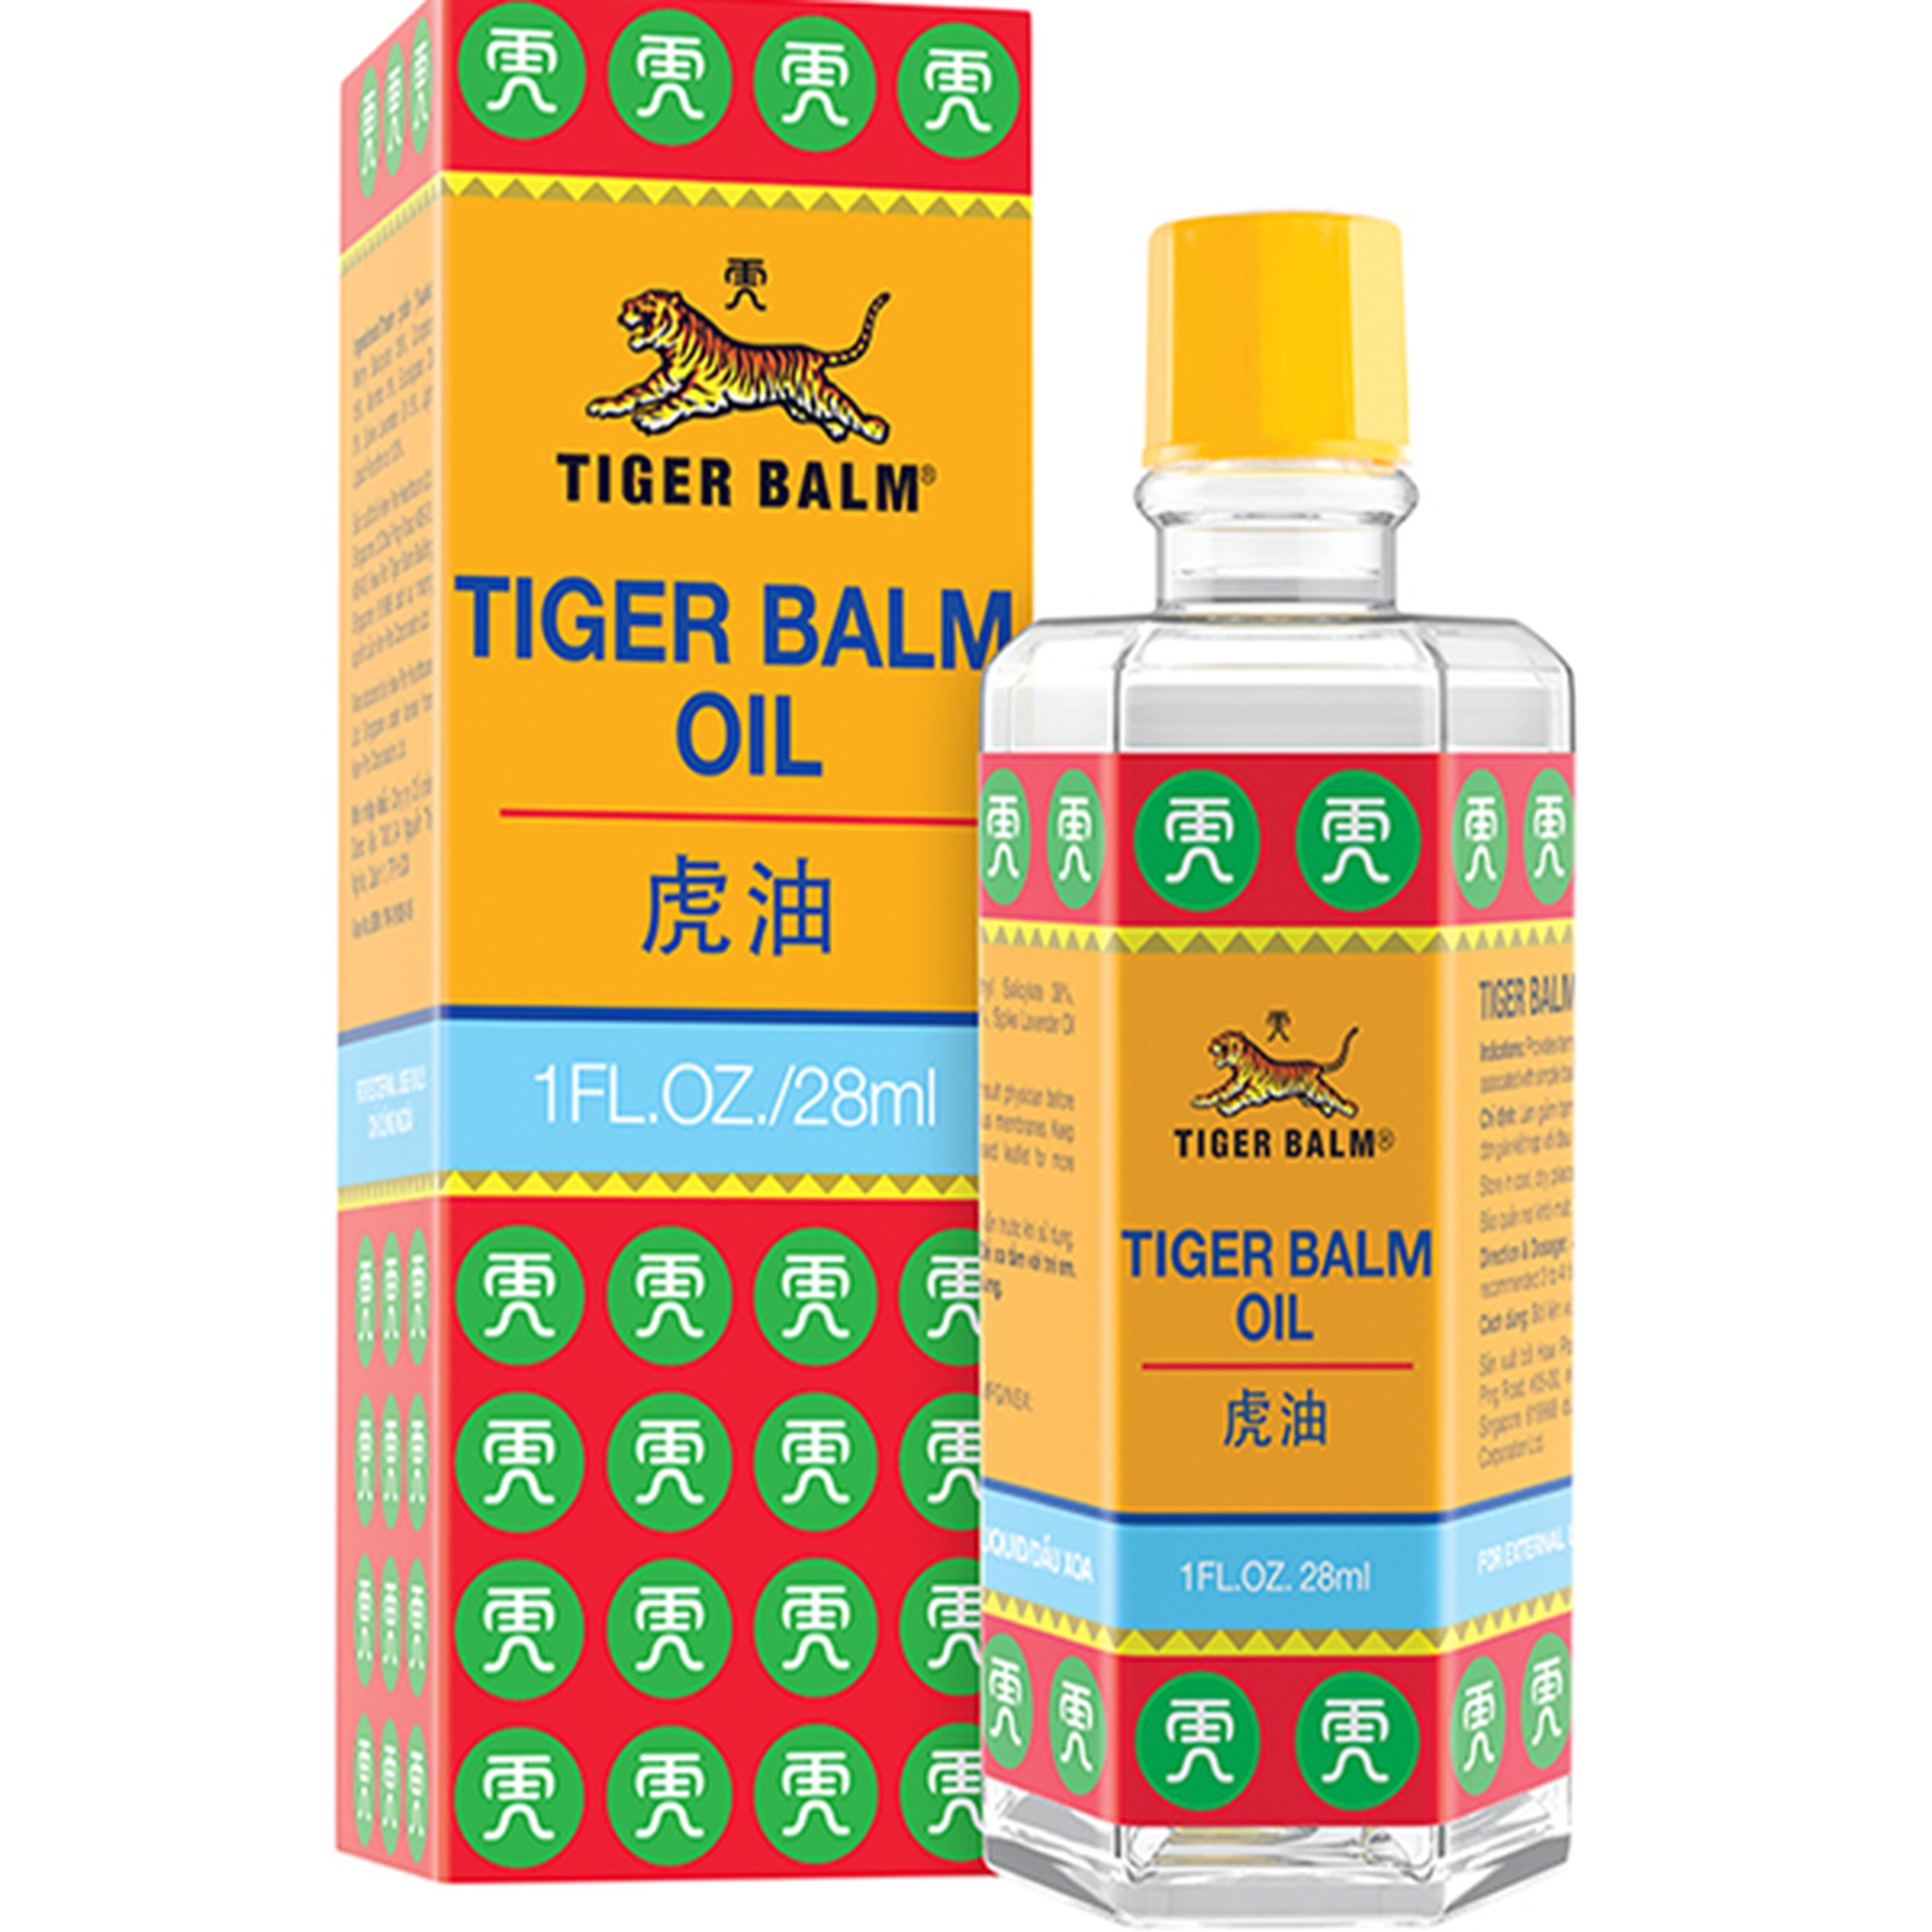 Dầu Tiger Balm Oil Haw Par hỗ trợ giảm đau nhức cơ bắp, đau trật khớp (28ml)